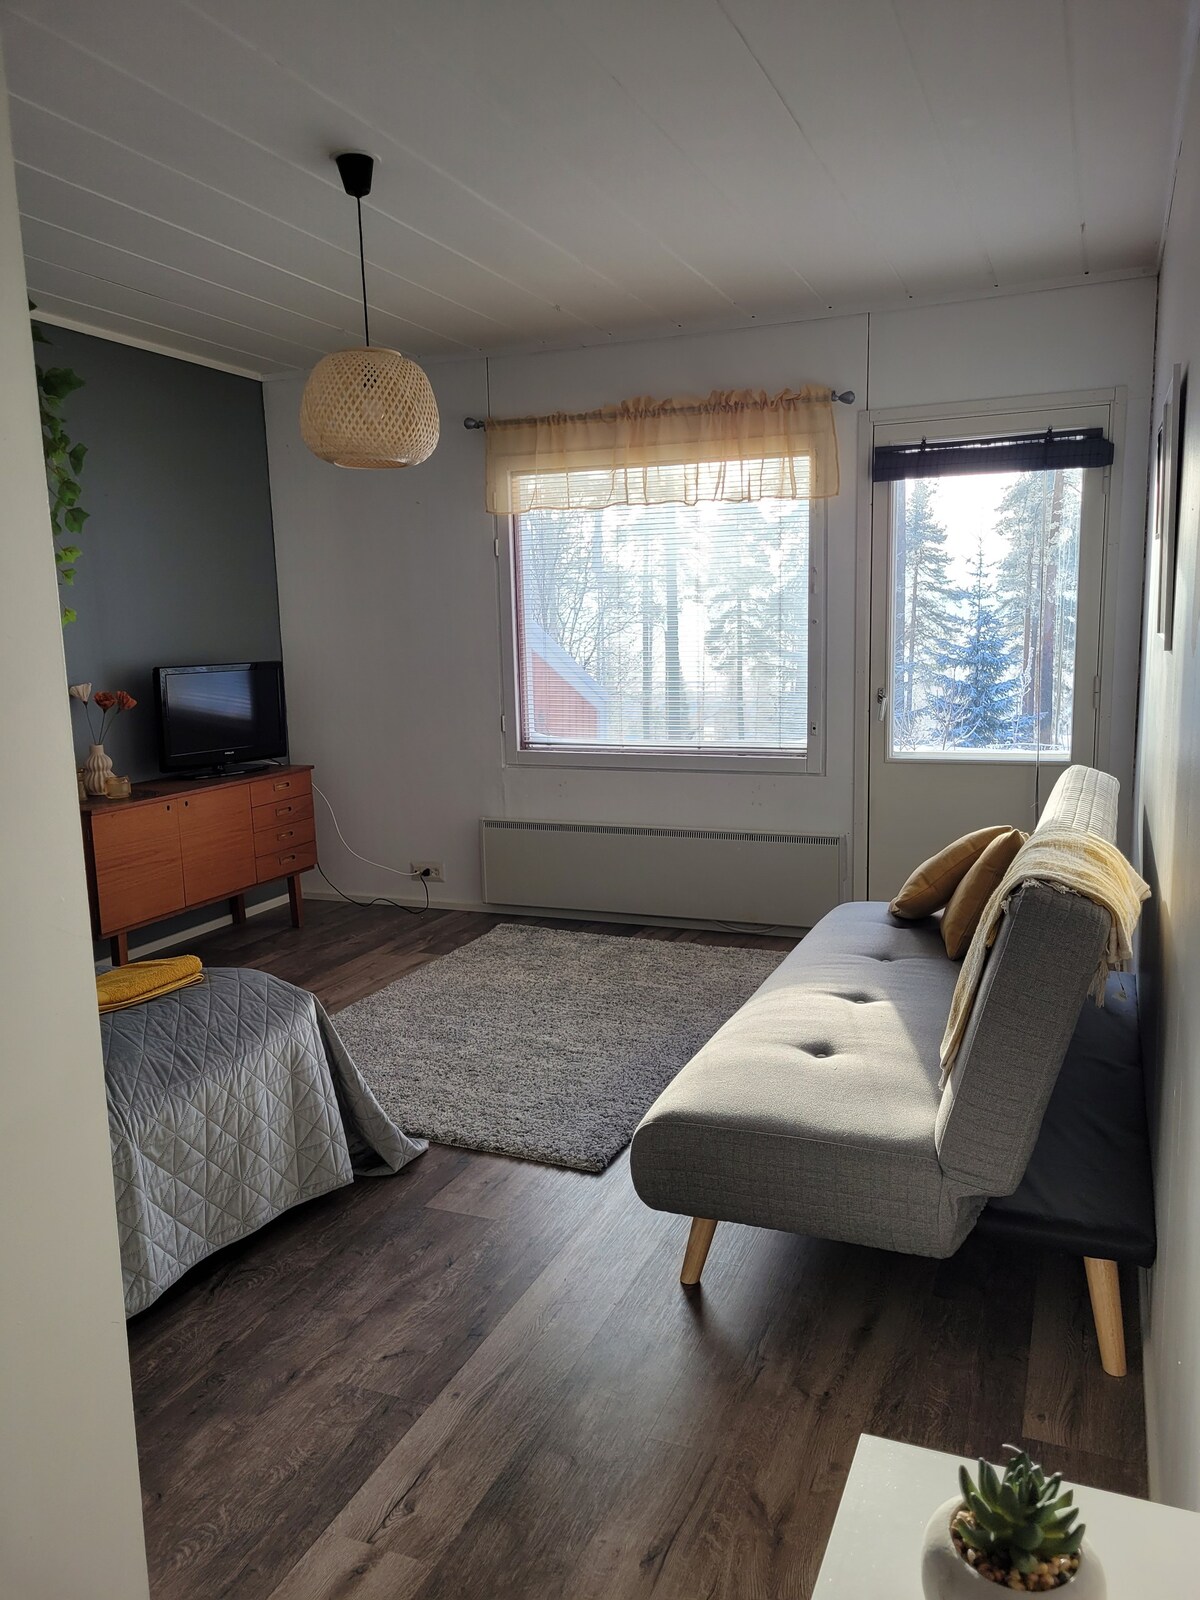 Yksiö, jossa sauna ja terassi Oulujärvelle